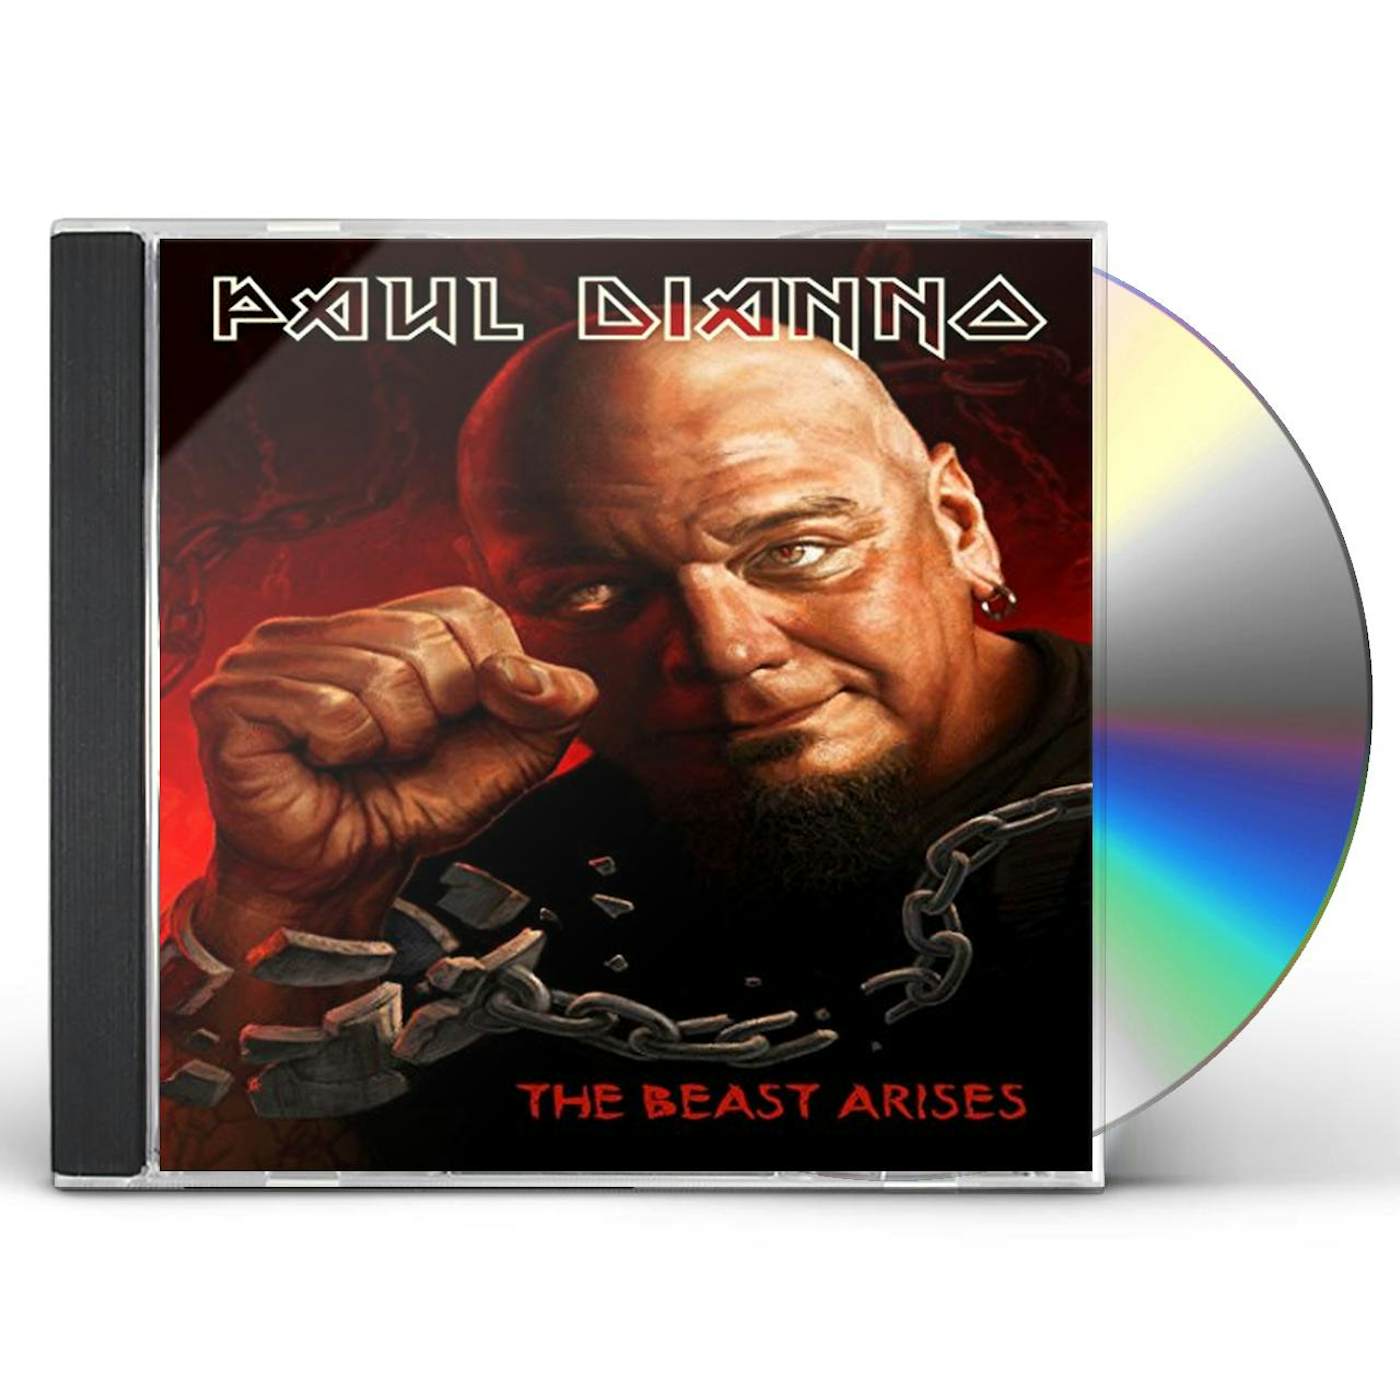 Paul Di'Anno BEAST ARISES CD